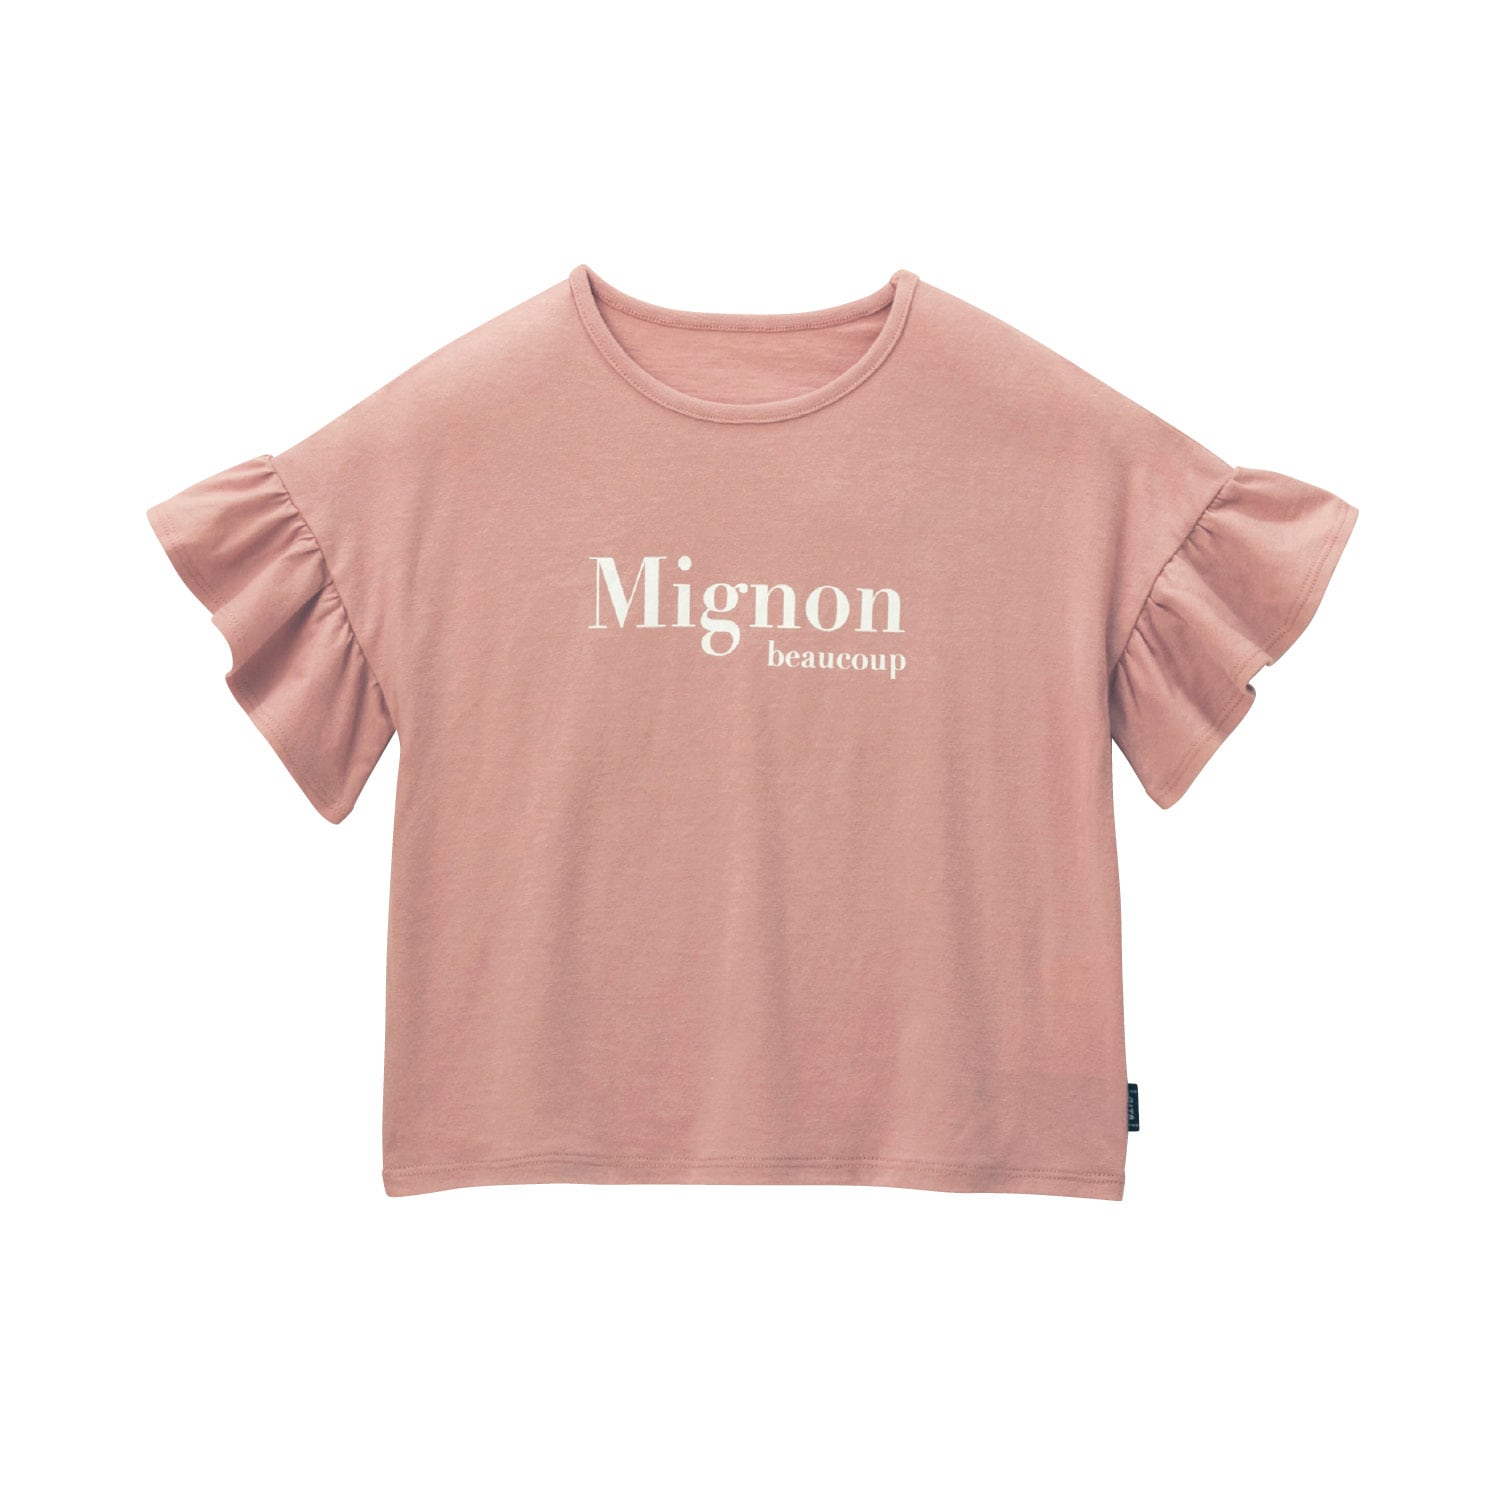 ほぼ新品150cm半袖Tシャツ ピンク - トップス(Tシャツ